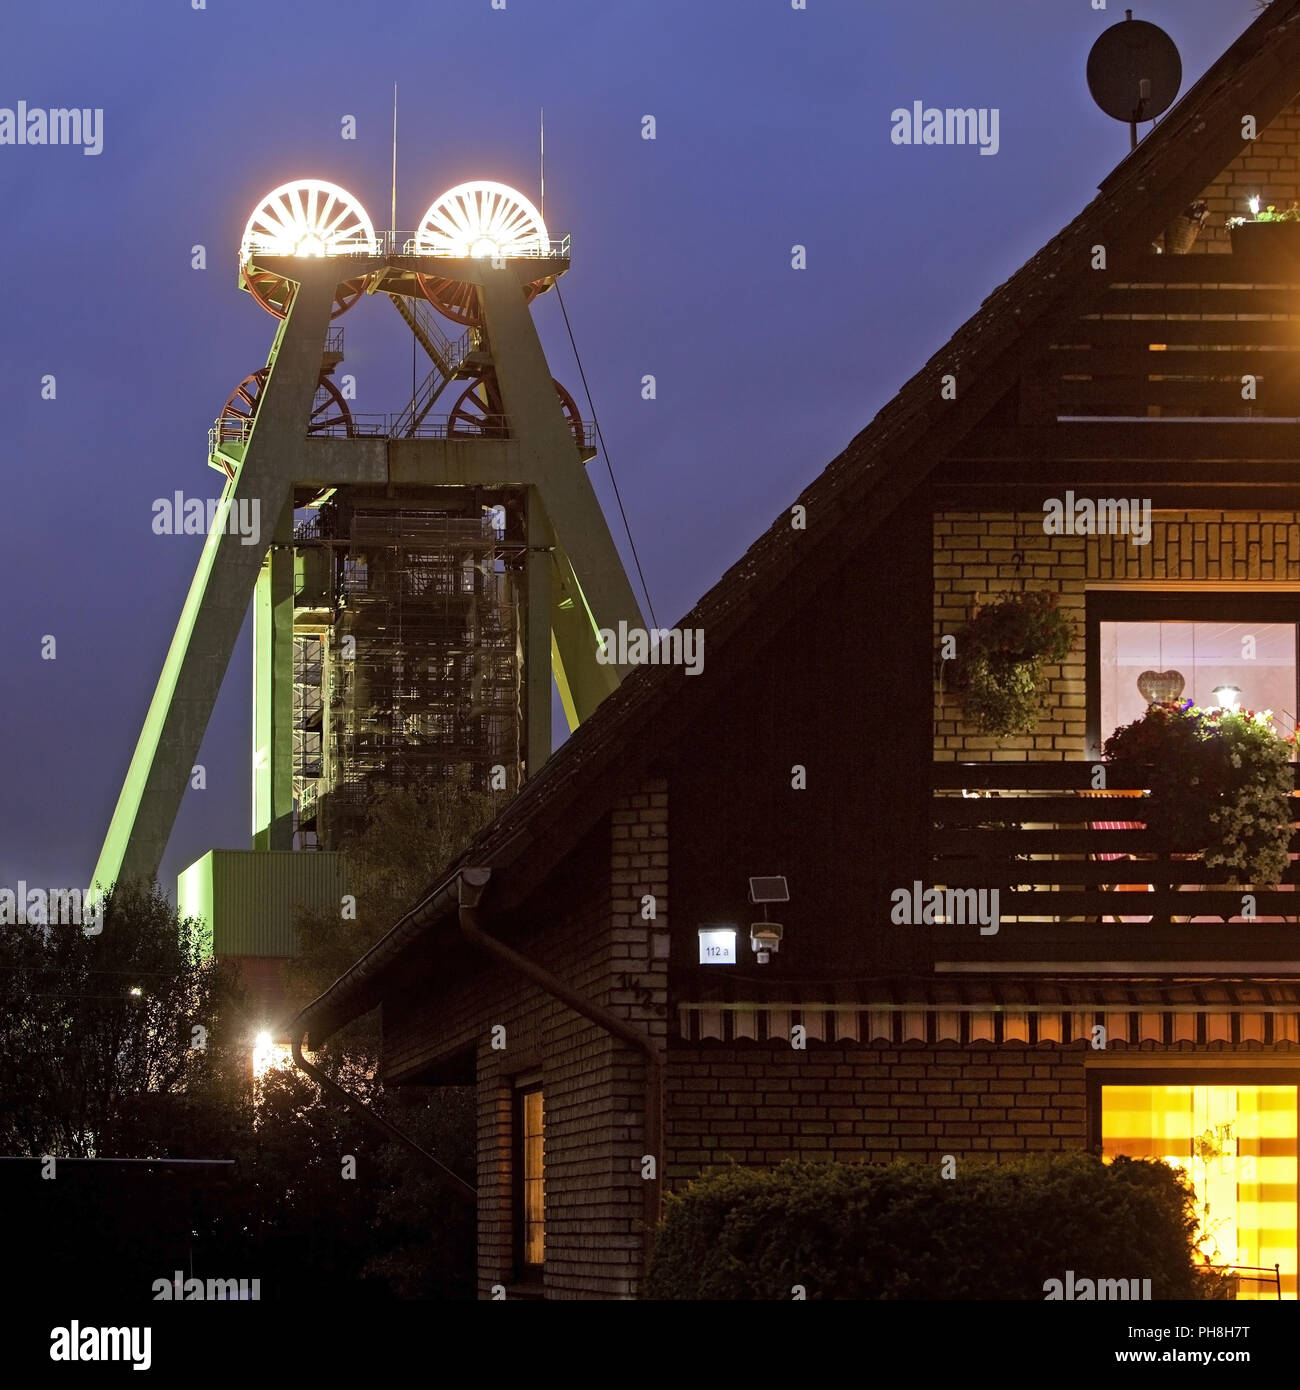 illuminated headframe Haus Aden, Bergkamen Stock Photo